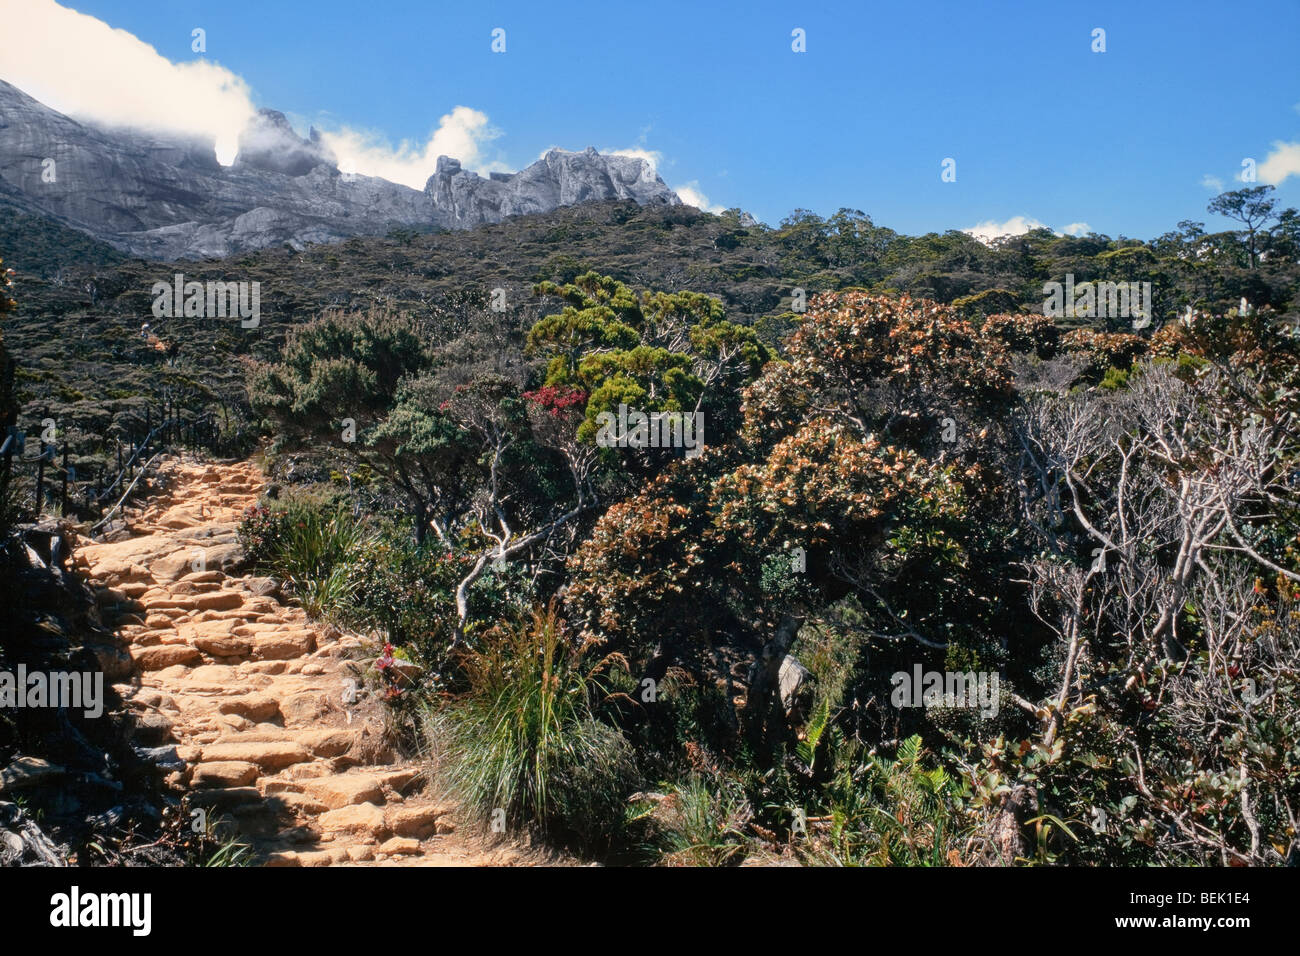 Gunung Kinabalu sous-zone engazonnée. 3 300 mètres (11 000 pieds), les arbres sont rabougris et noueux, journée ensoleillée Banque D'Images